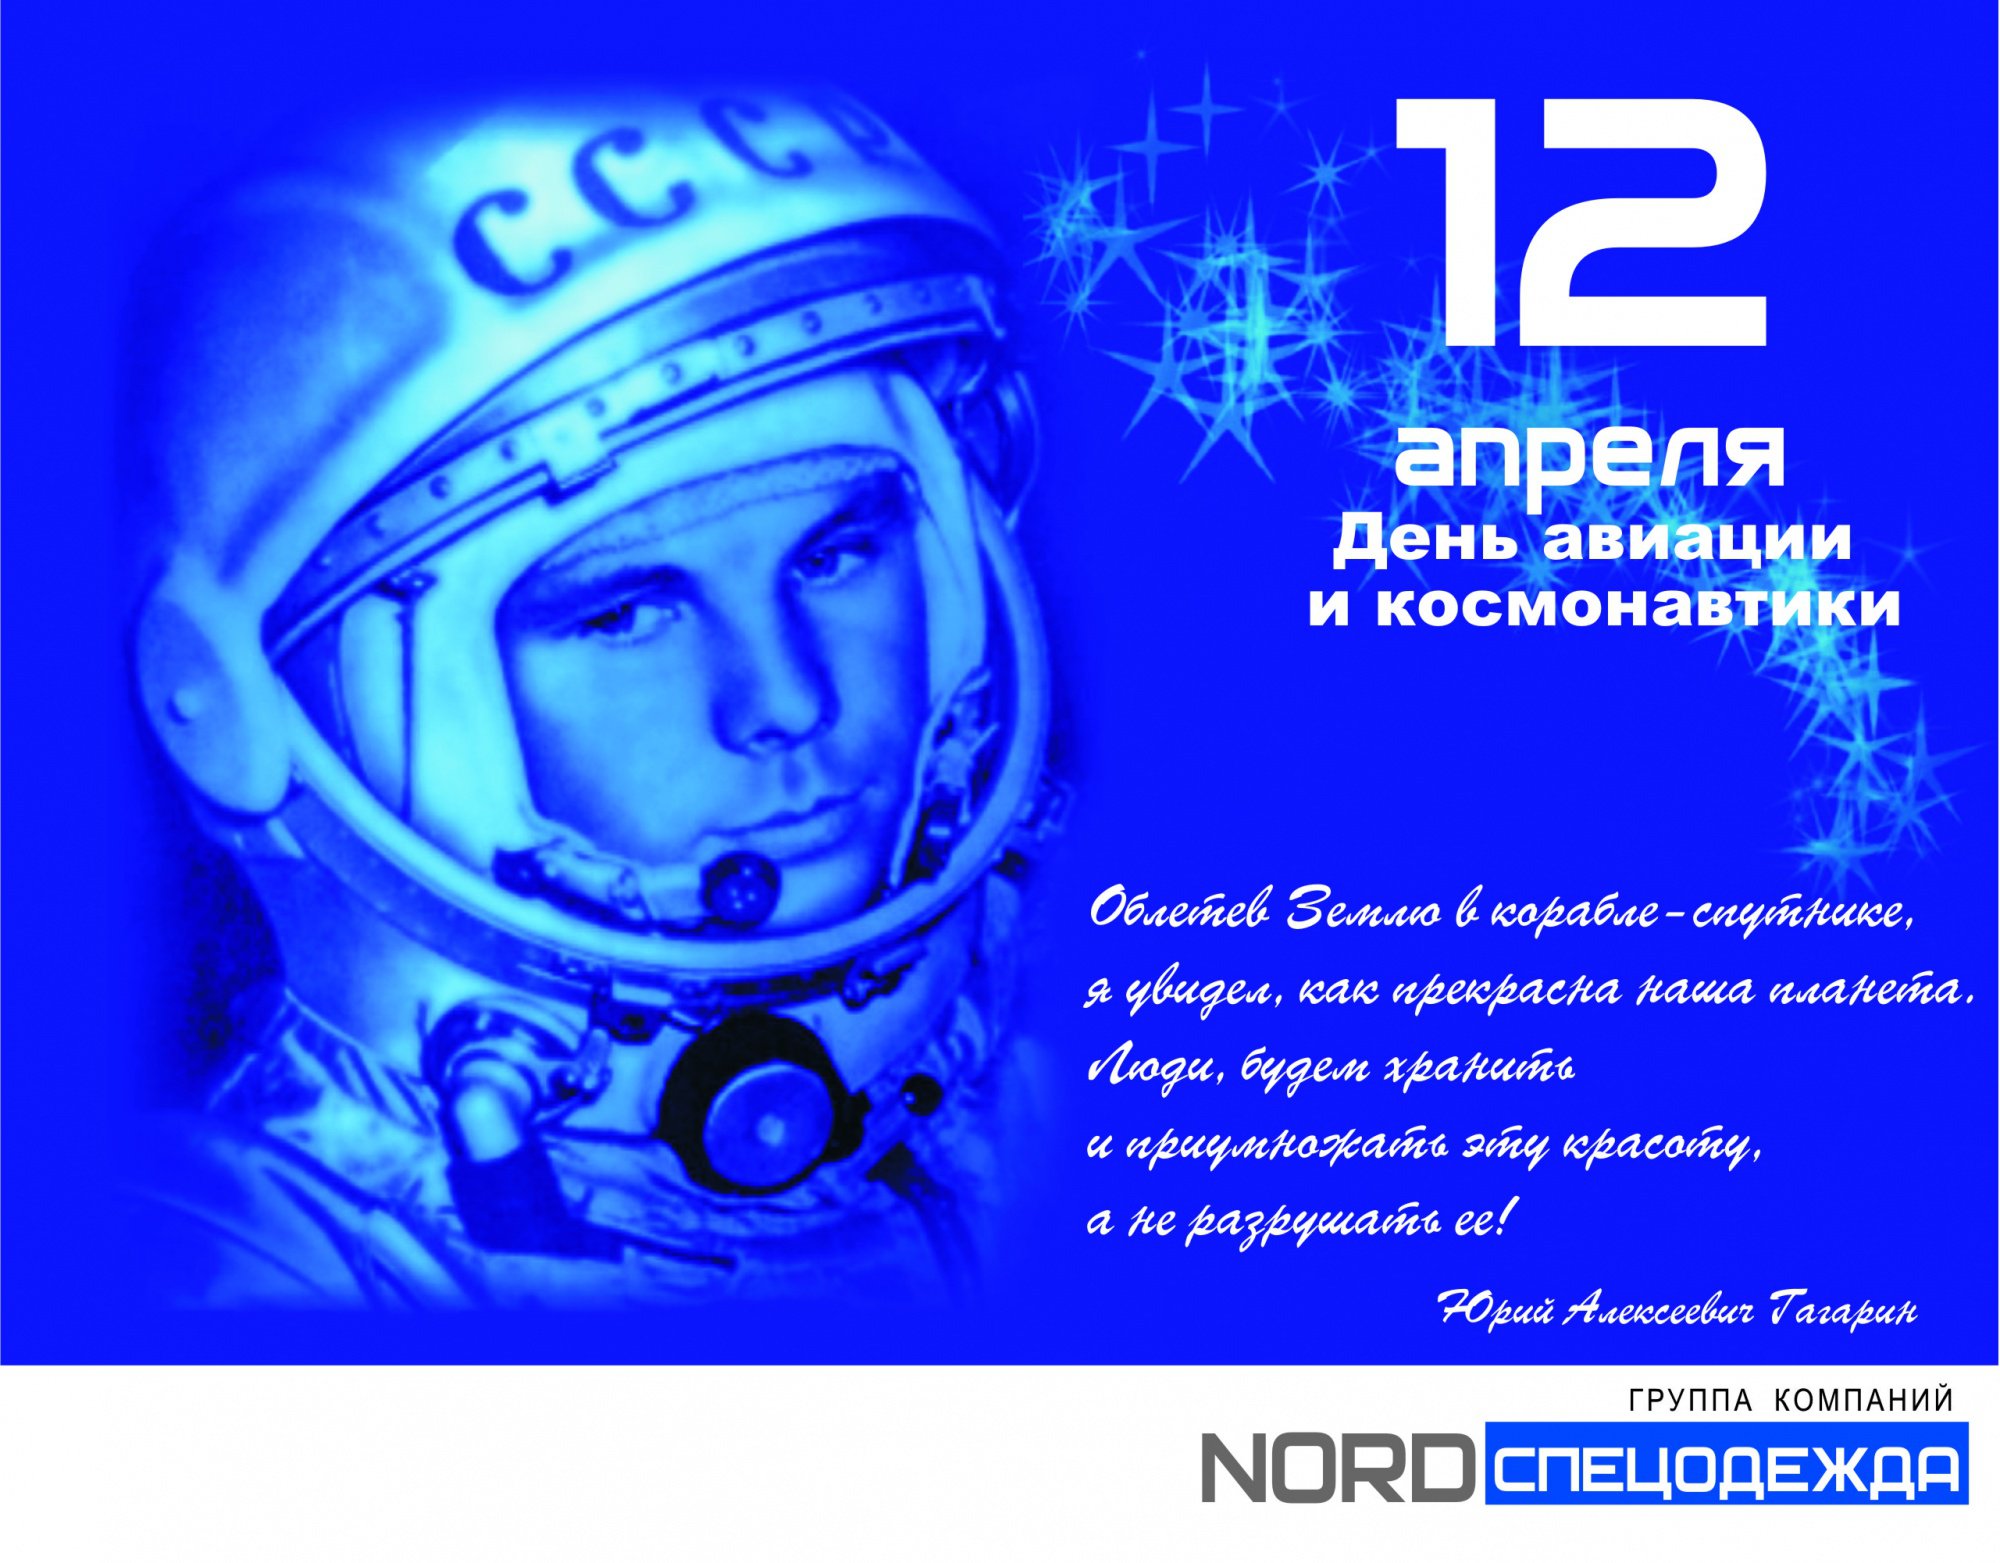 Поздравление с днем космонавтики официальное